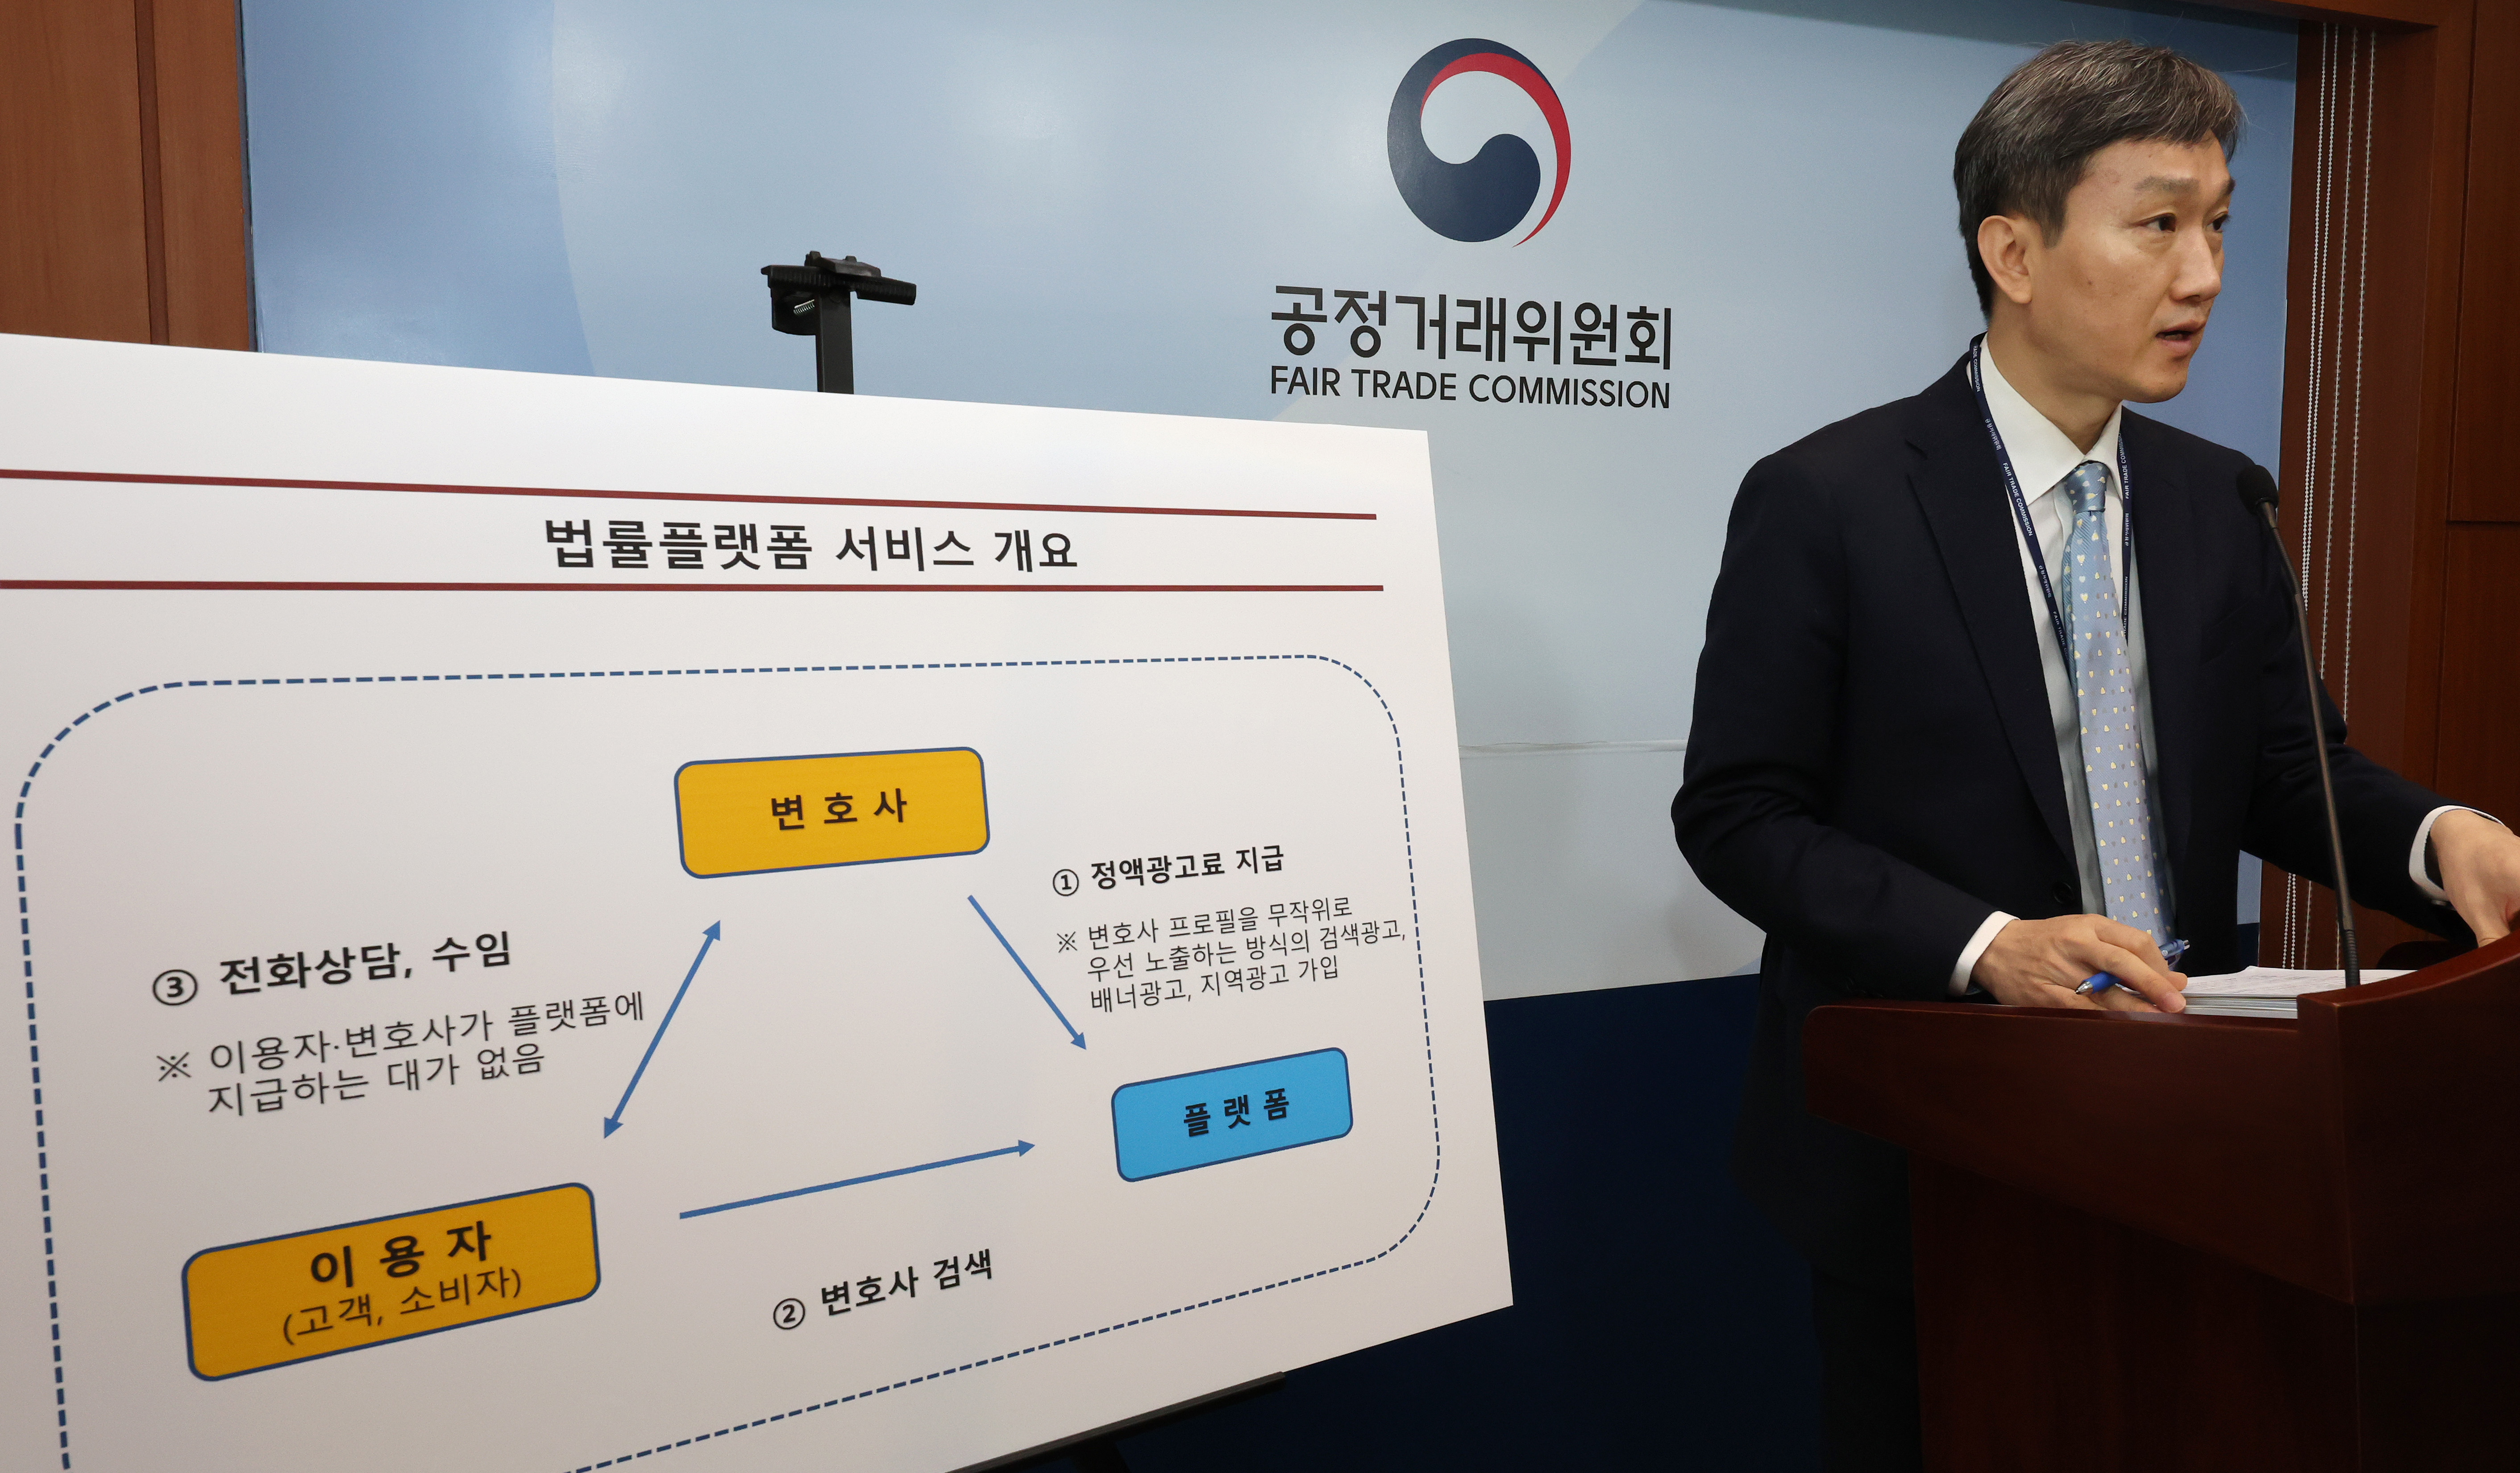 공정위, 대한변호사협회와 서울지방변호사회에 과징금 부과 결정